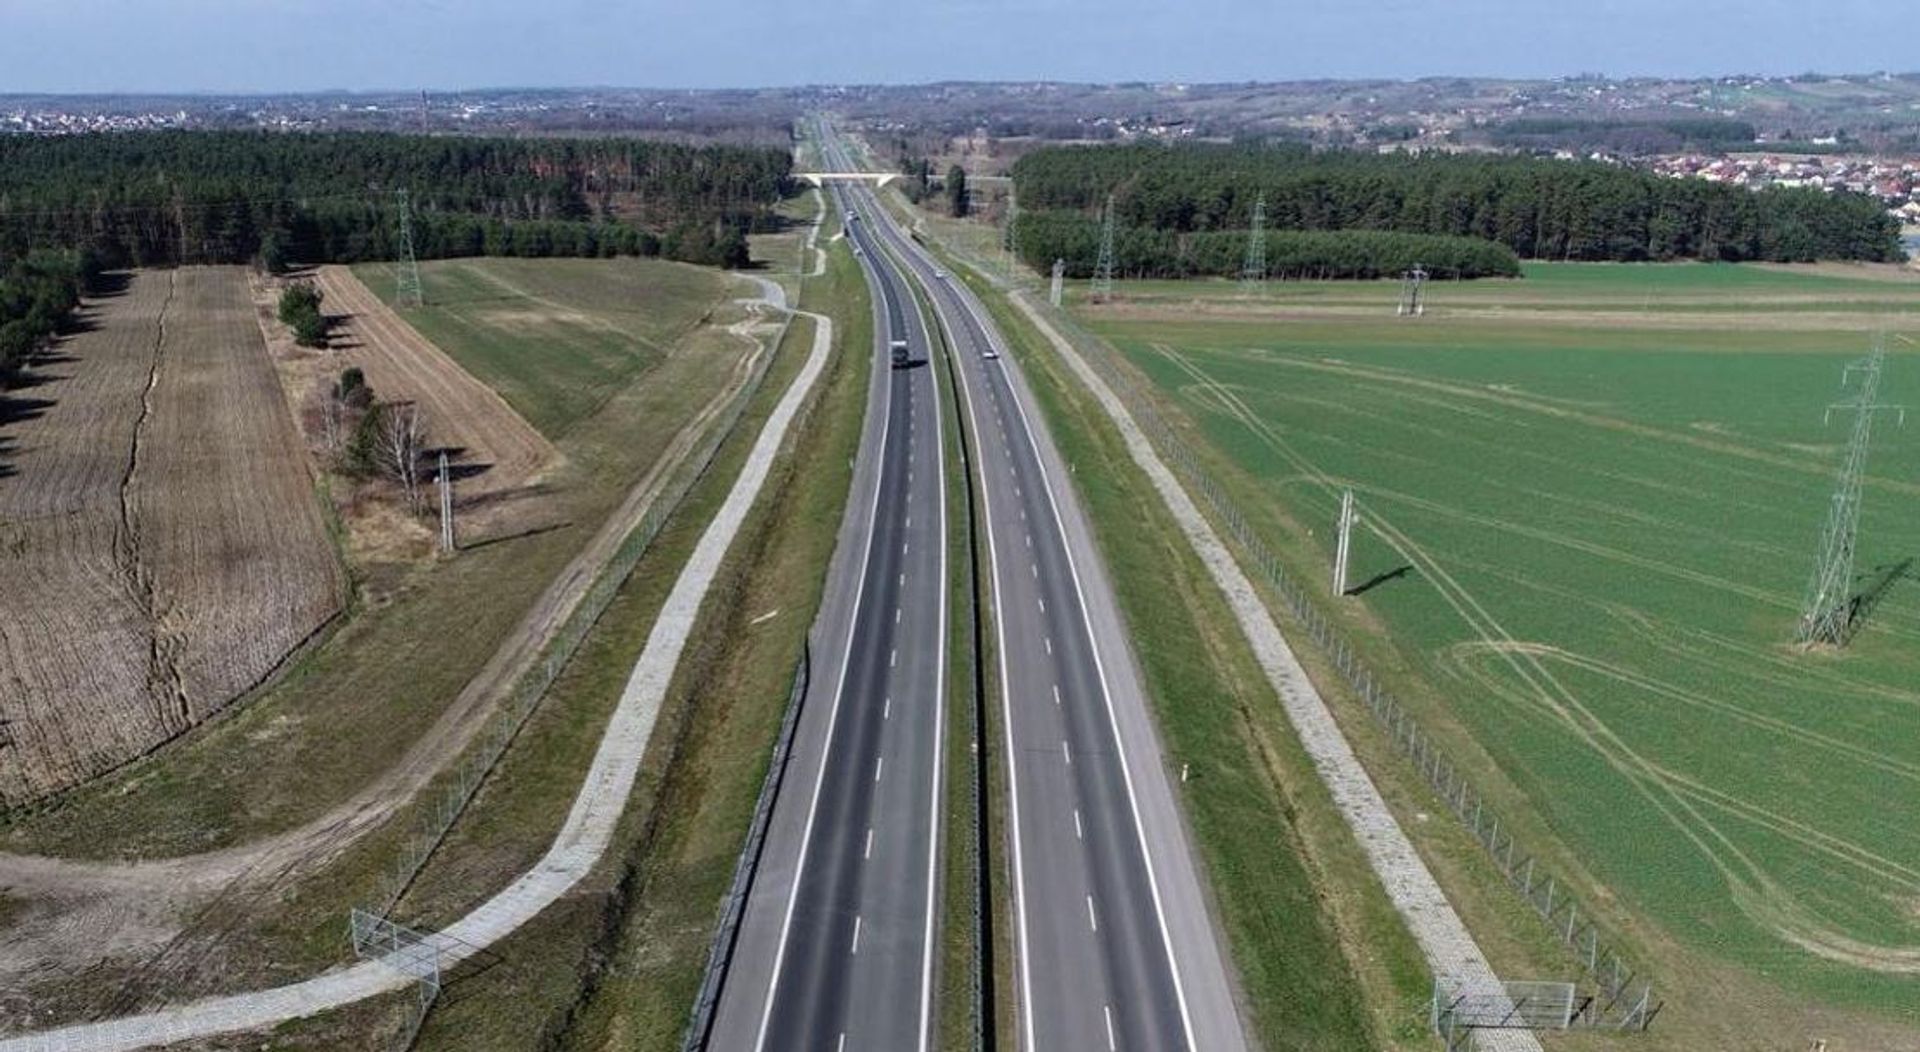 Odcinek drogi ekspresowej S17 w woj. lubelskim z unijnym dofinansowaniem